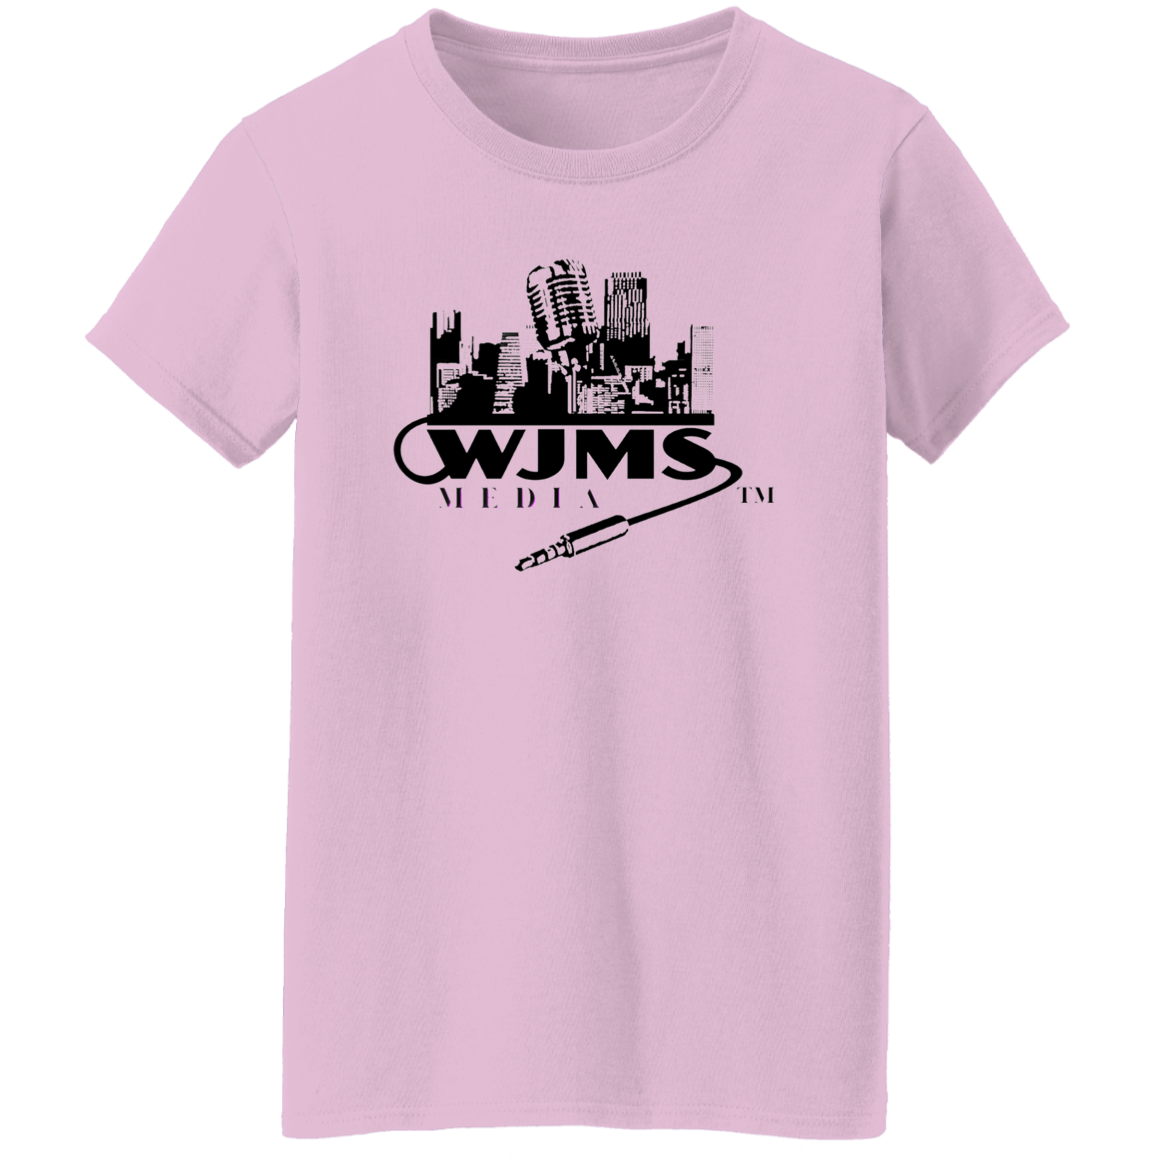 WJMS Ladies' 5.3 oz. T-Shirt